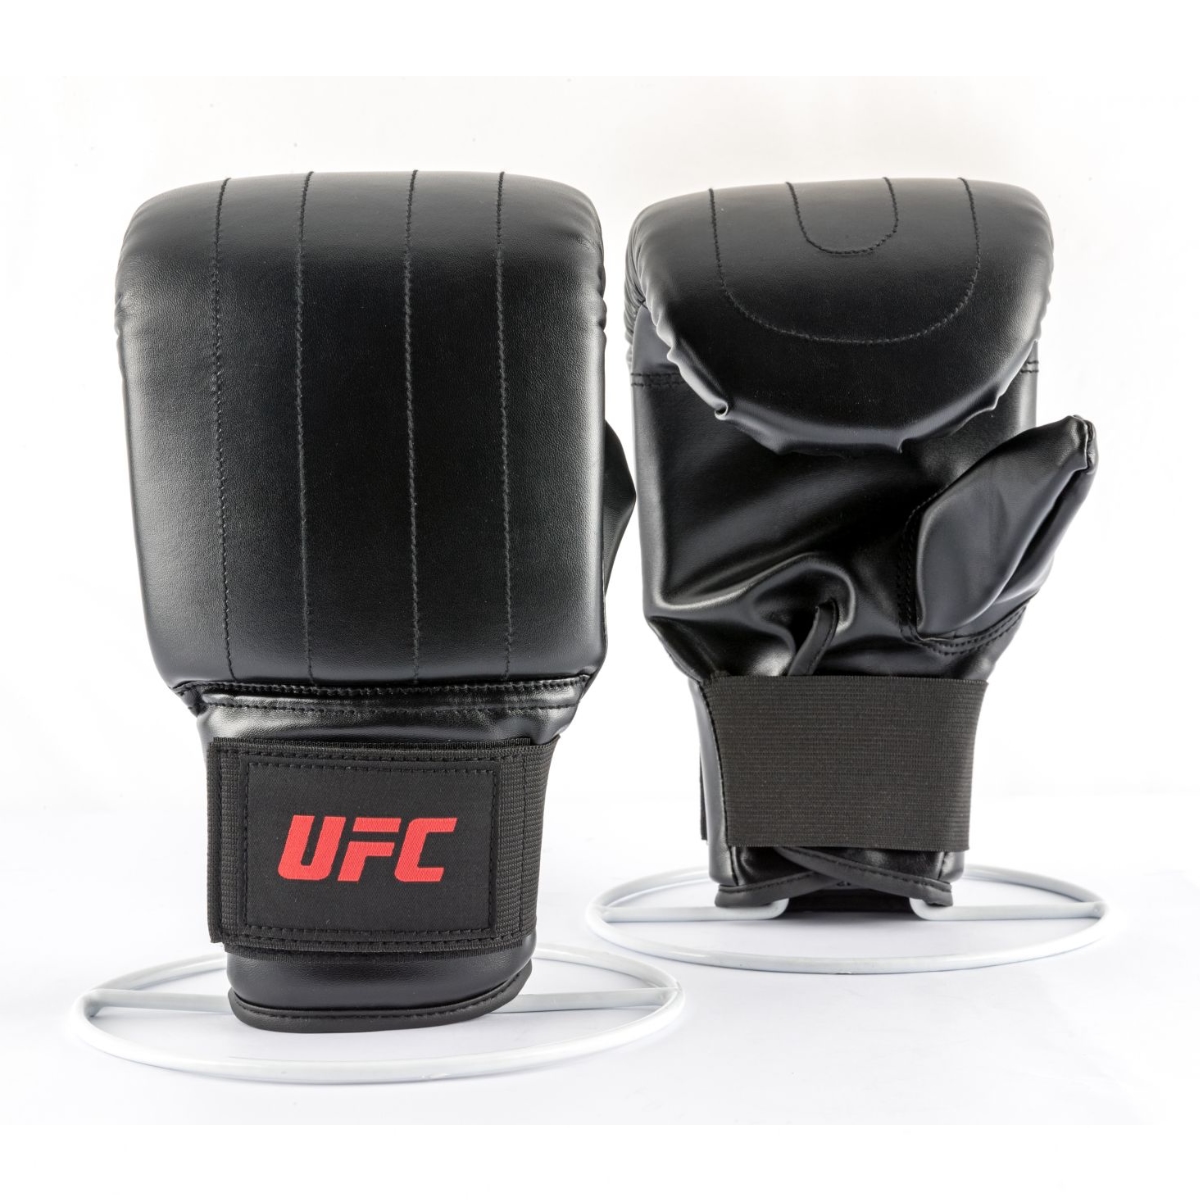 Brug UFC Bag Gloves - str. XL til en forbedret oplevelse